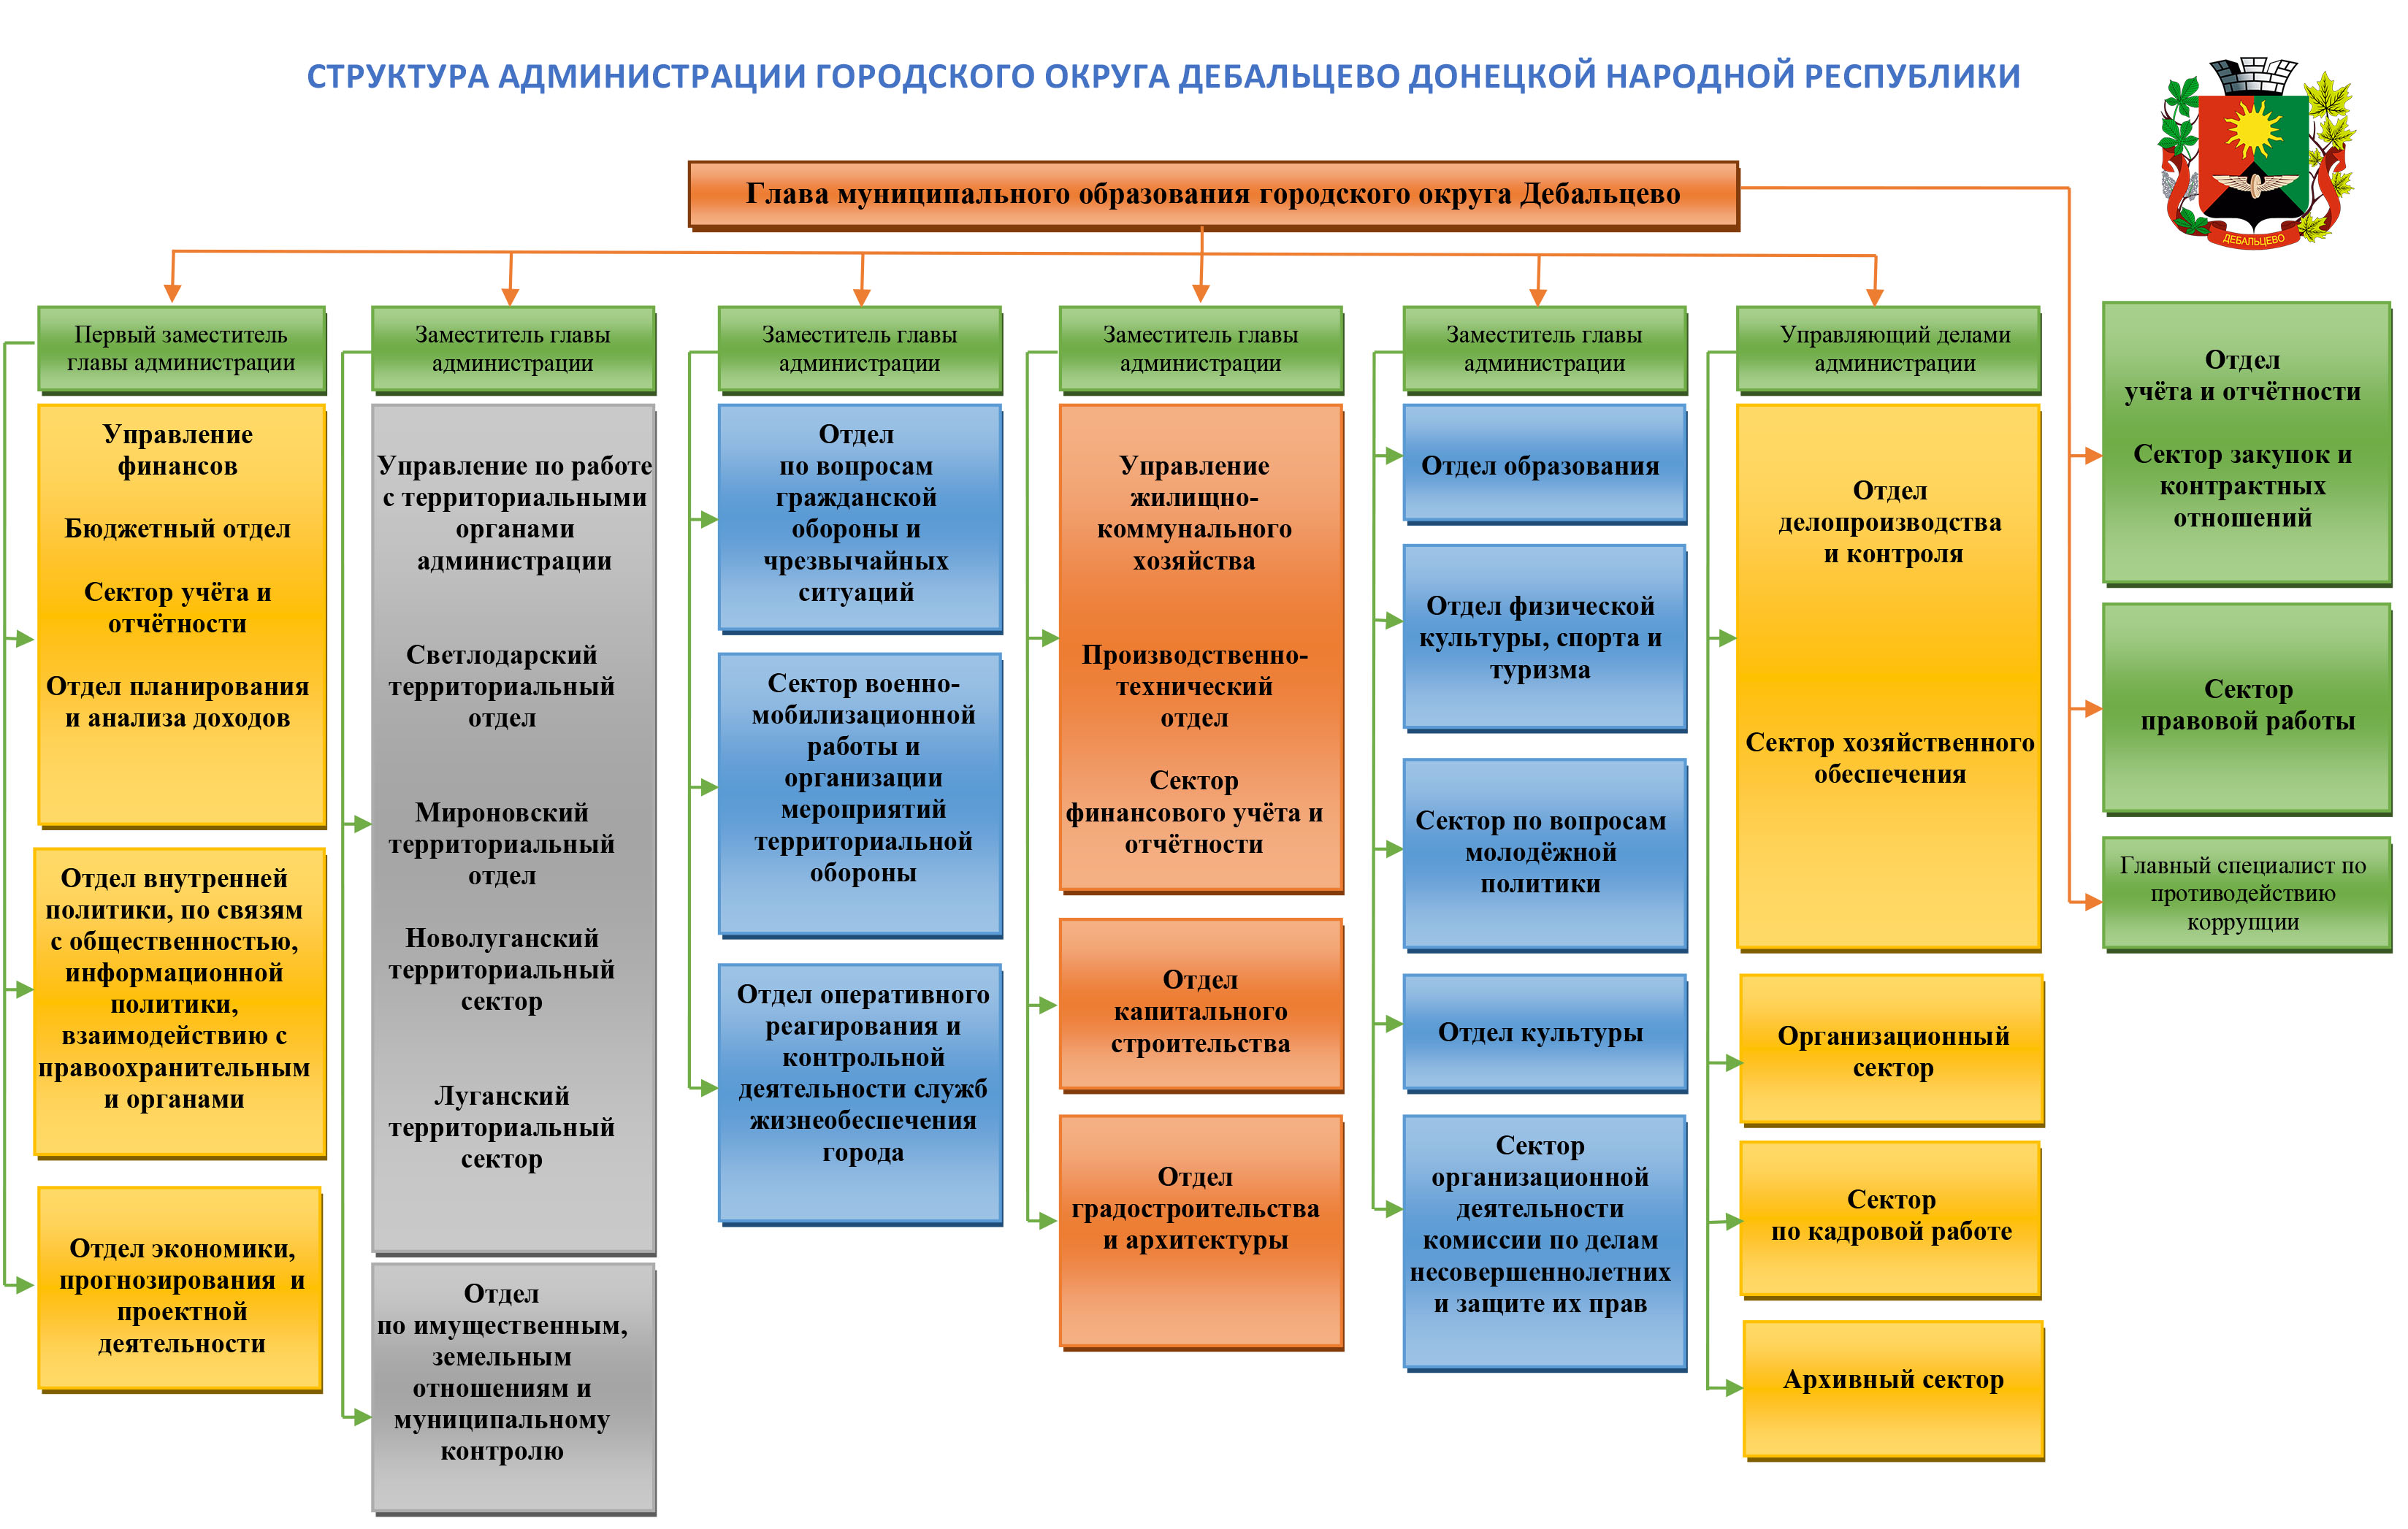 Структура Муниципального образования городского округа Дебальцево Донецкой Народной Республики.